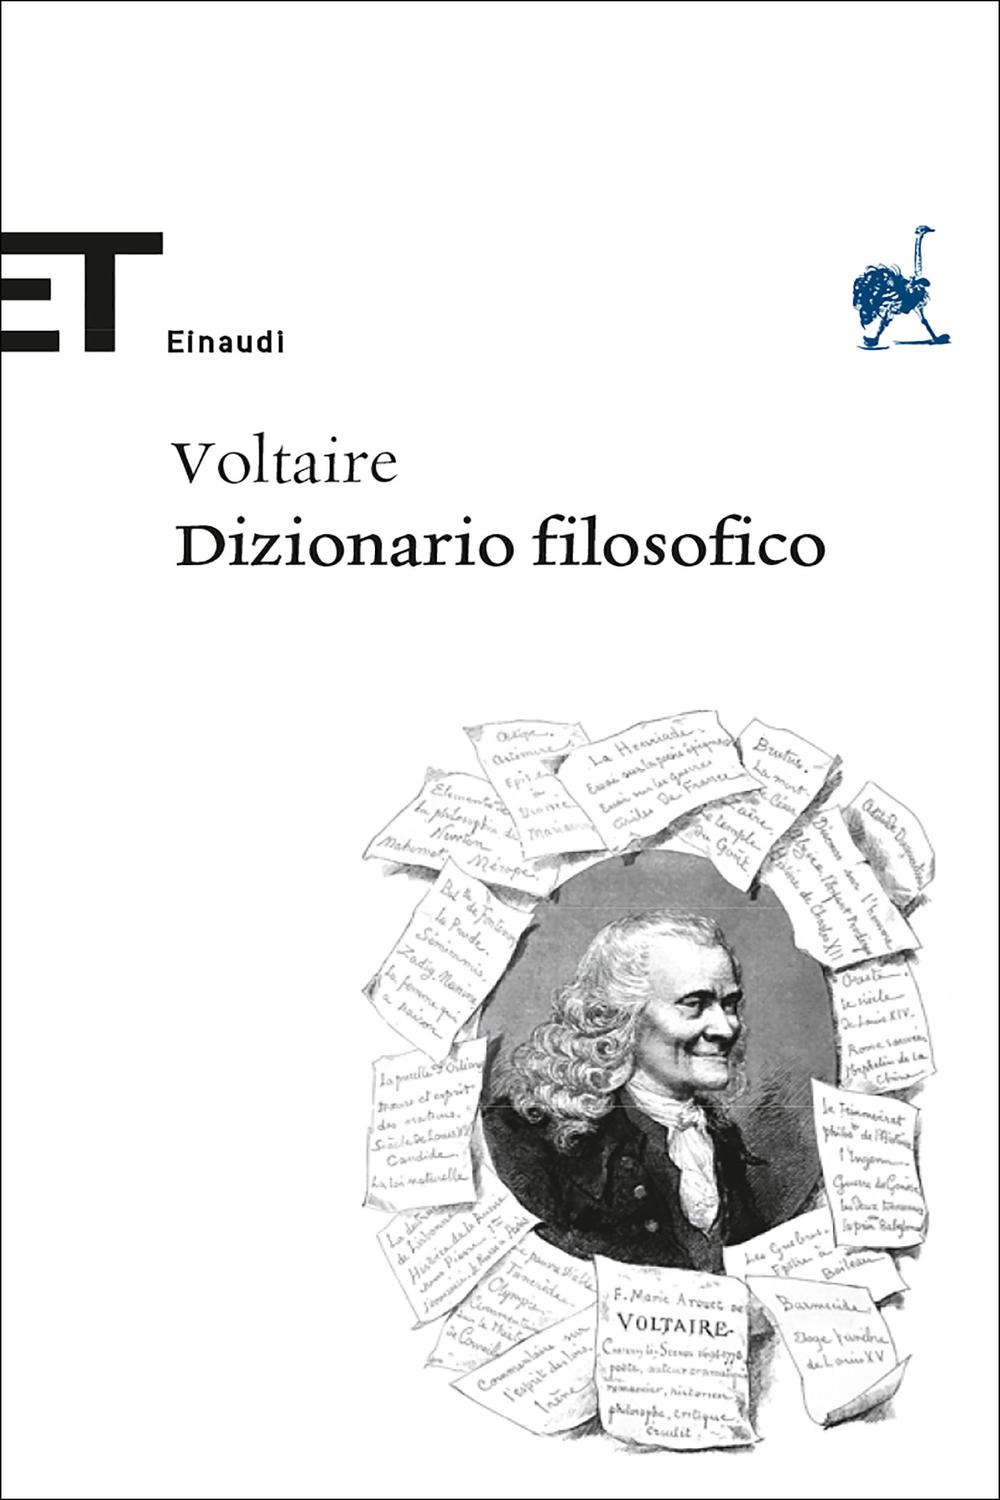 Dizionario filosofico - Voltaire